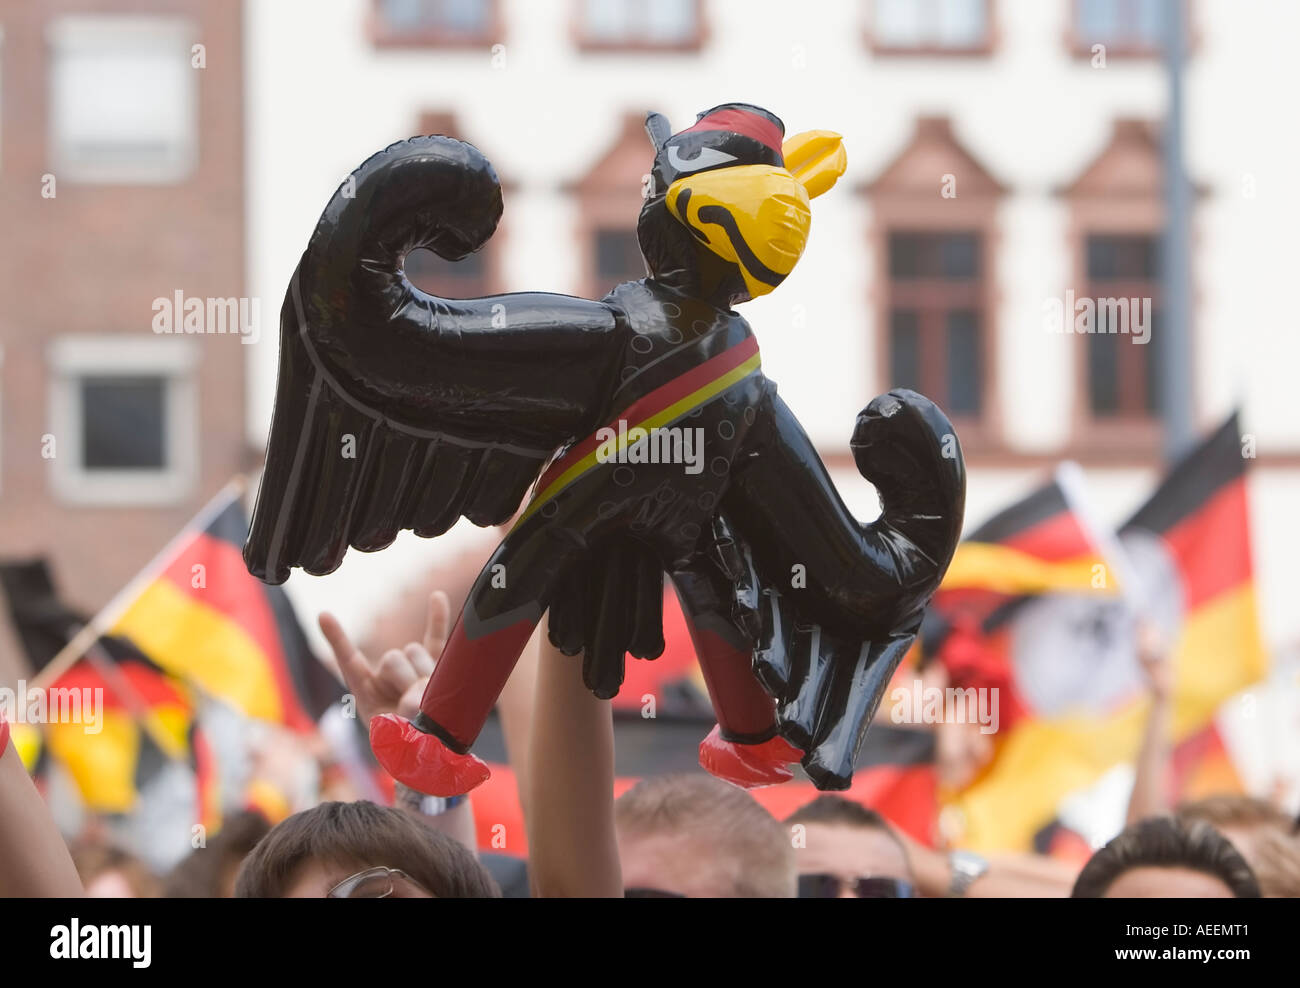 Deutsche Fußball-Fans einen aufblasbaren Adler während der WM hochhalten entsprechen Deutschland Vs Schweden (2:0) bei einem public-Viewing-event Stockfoto